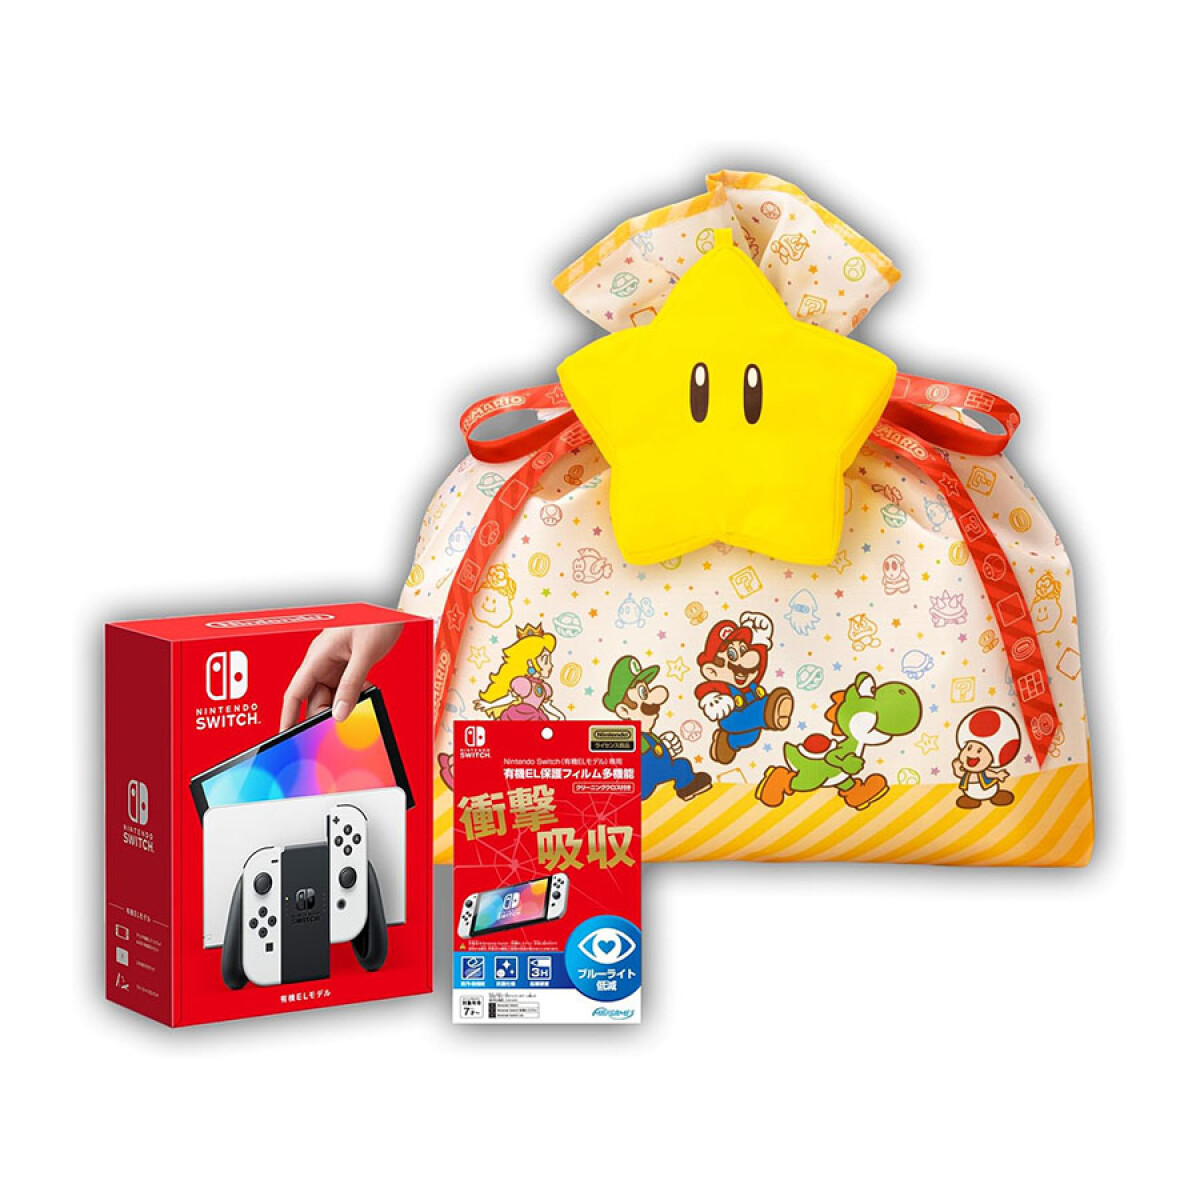 Bundle Nintendo Switch: OLED Blanca + Protector de Pantalla + Bolsa Temática de Mario [Versión Japonesa] 